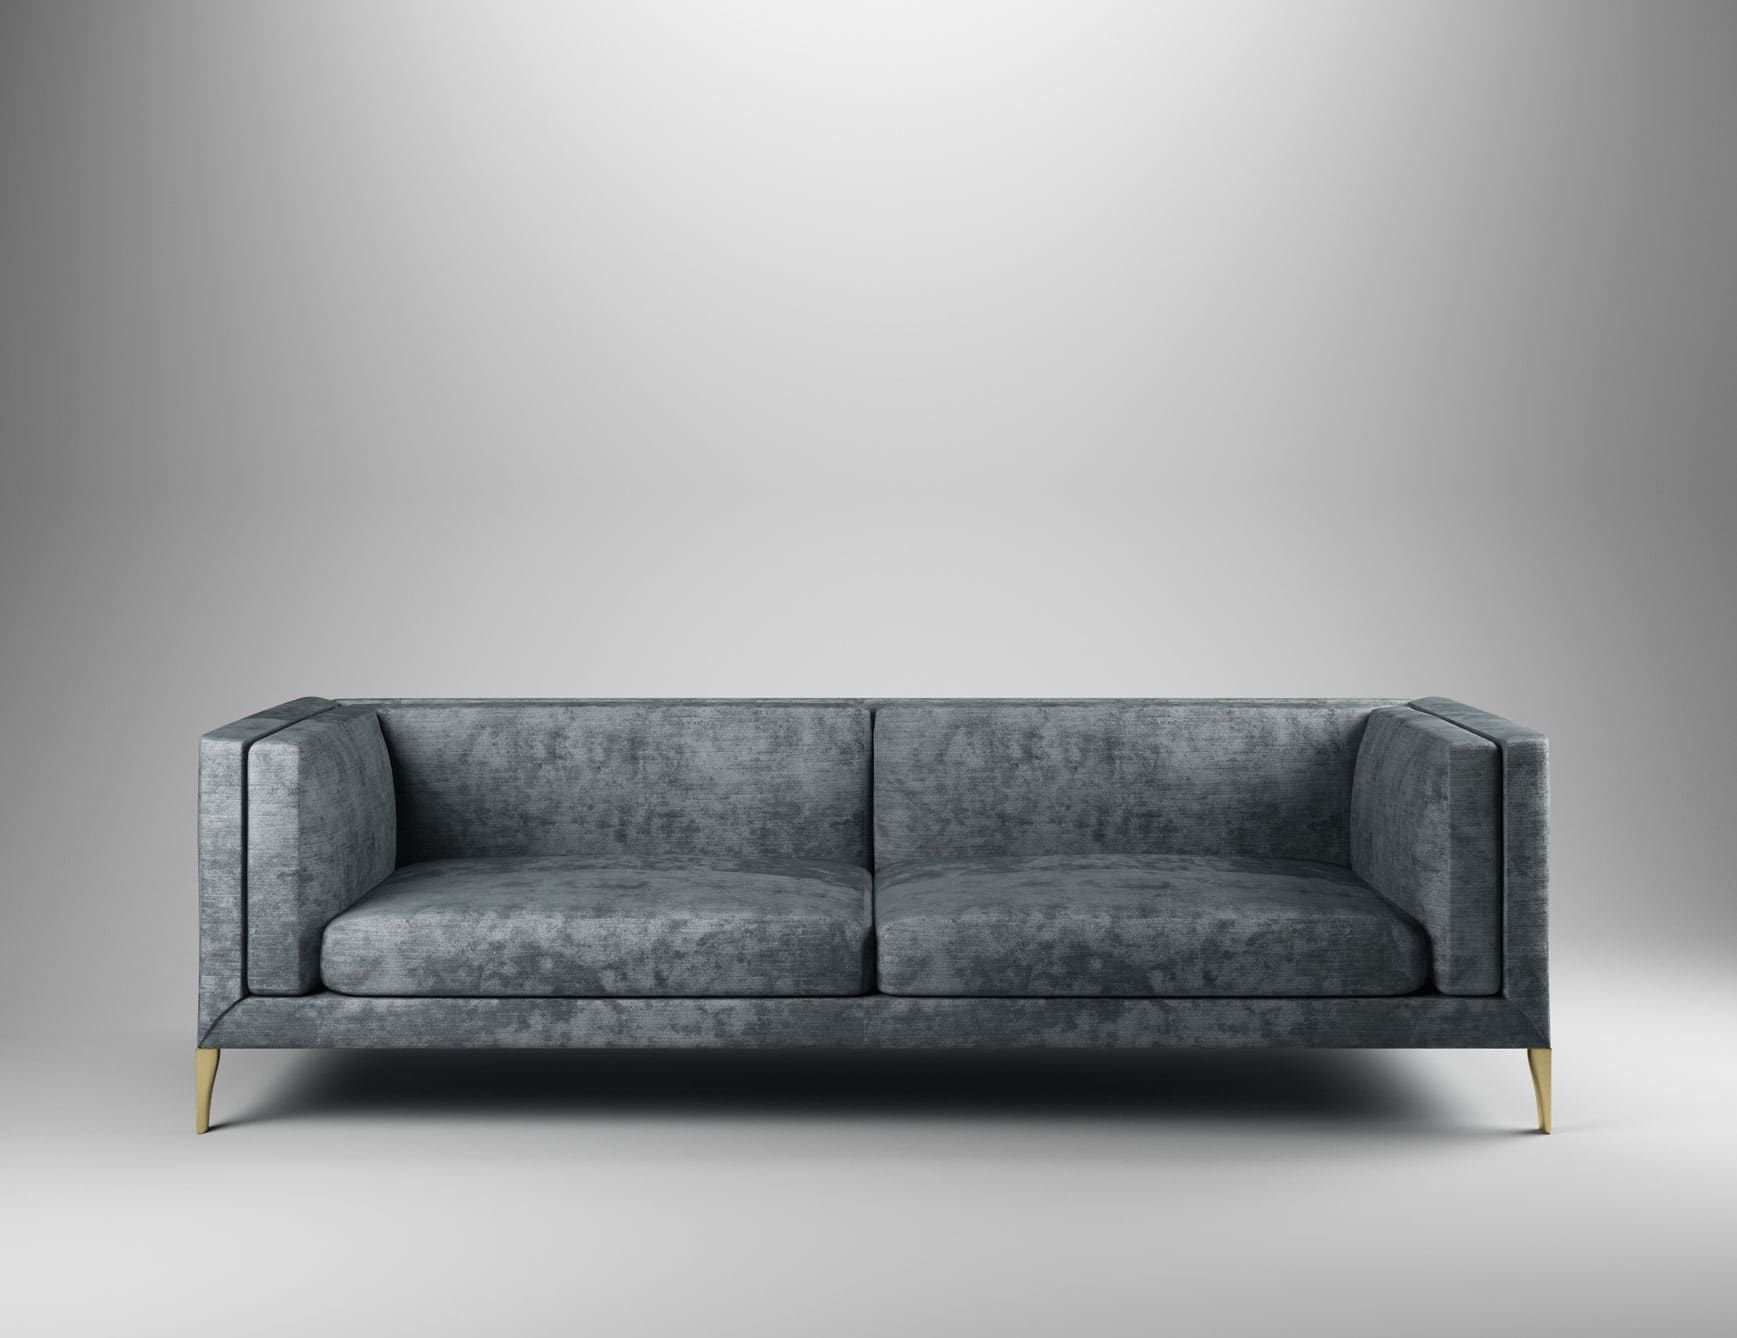 Elegance Sofa modern luxury sofa chair with grey fabric